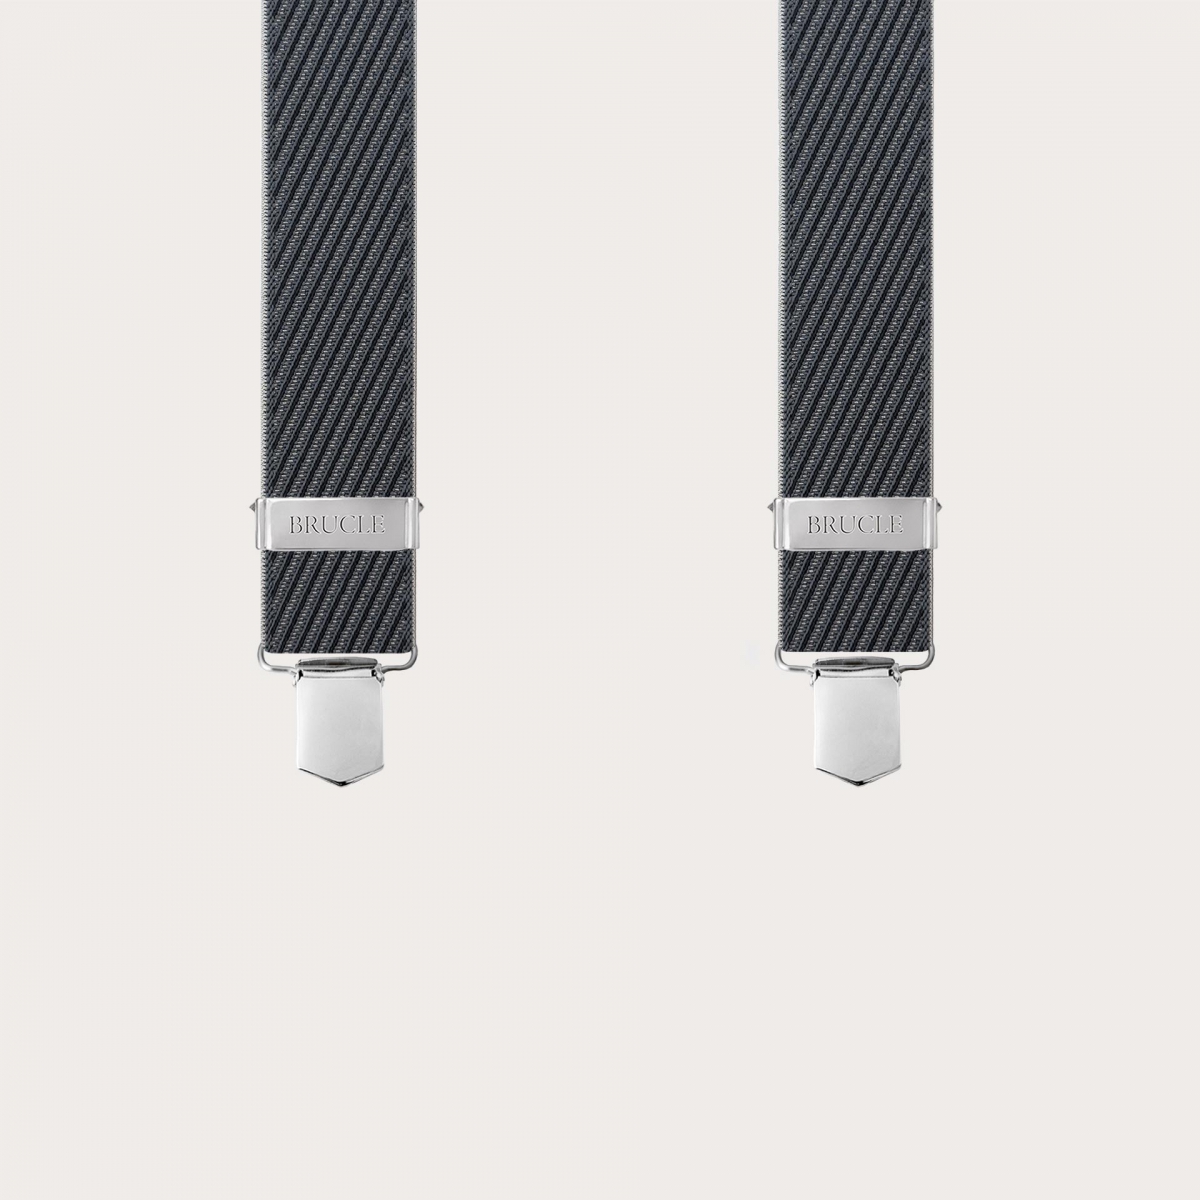 Schwarz-graue gestreifte elastische Hosenträger mit Clips